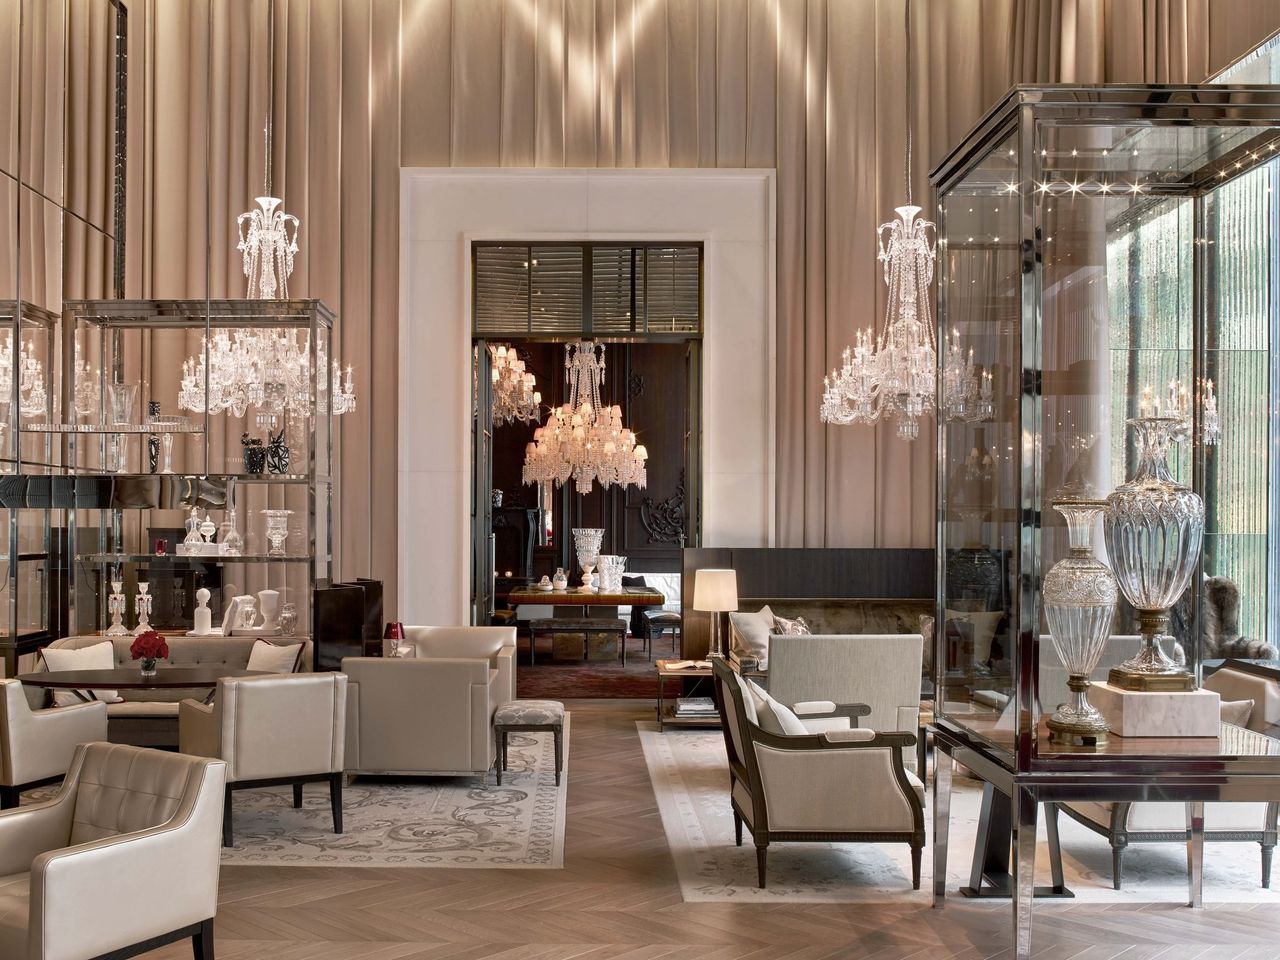 Le Baccarat Hotel and Residences à New York se distingue par son élégance, avec chaque chambre richement ornée de cristaux de Baccarat. 